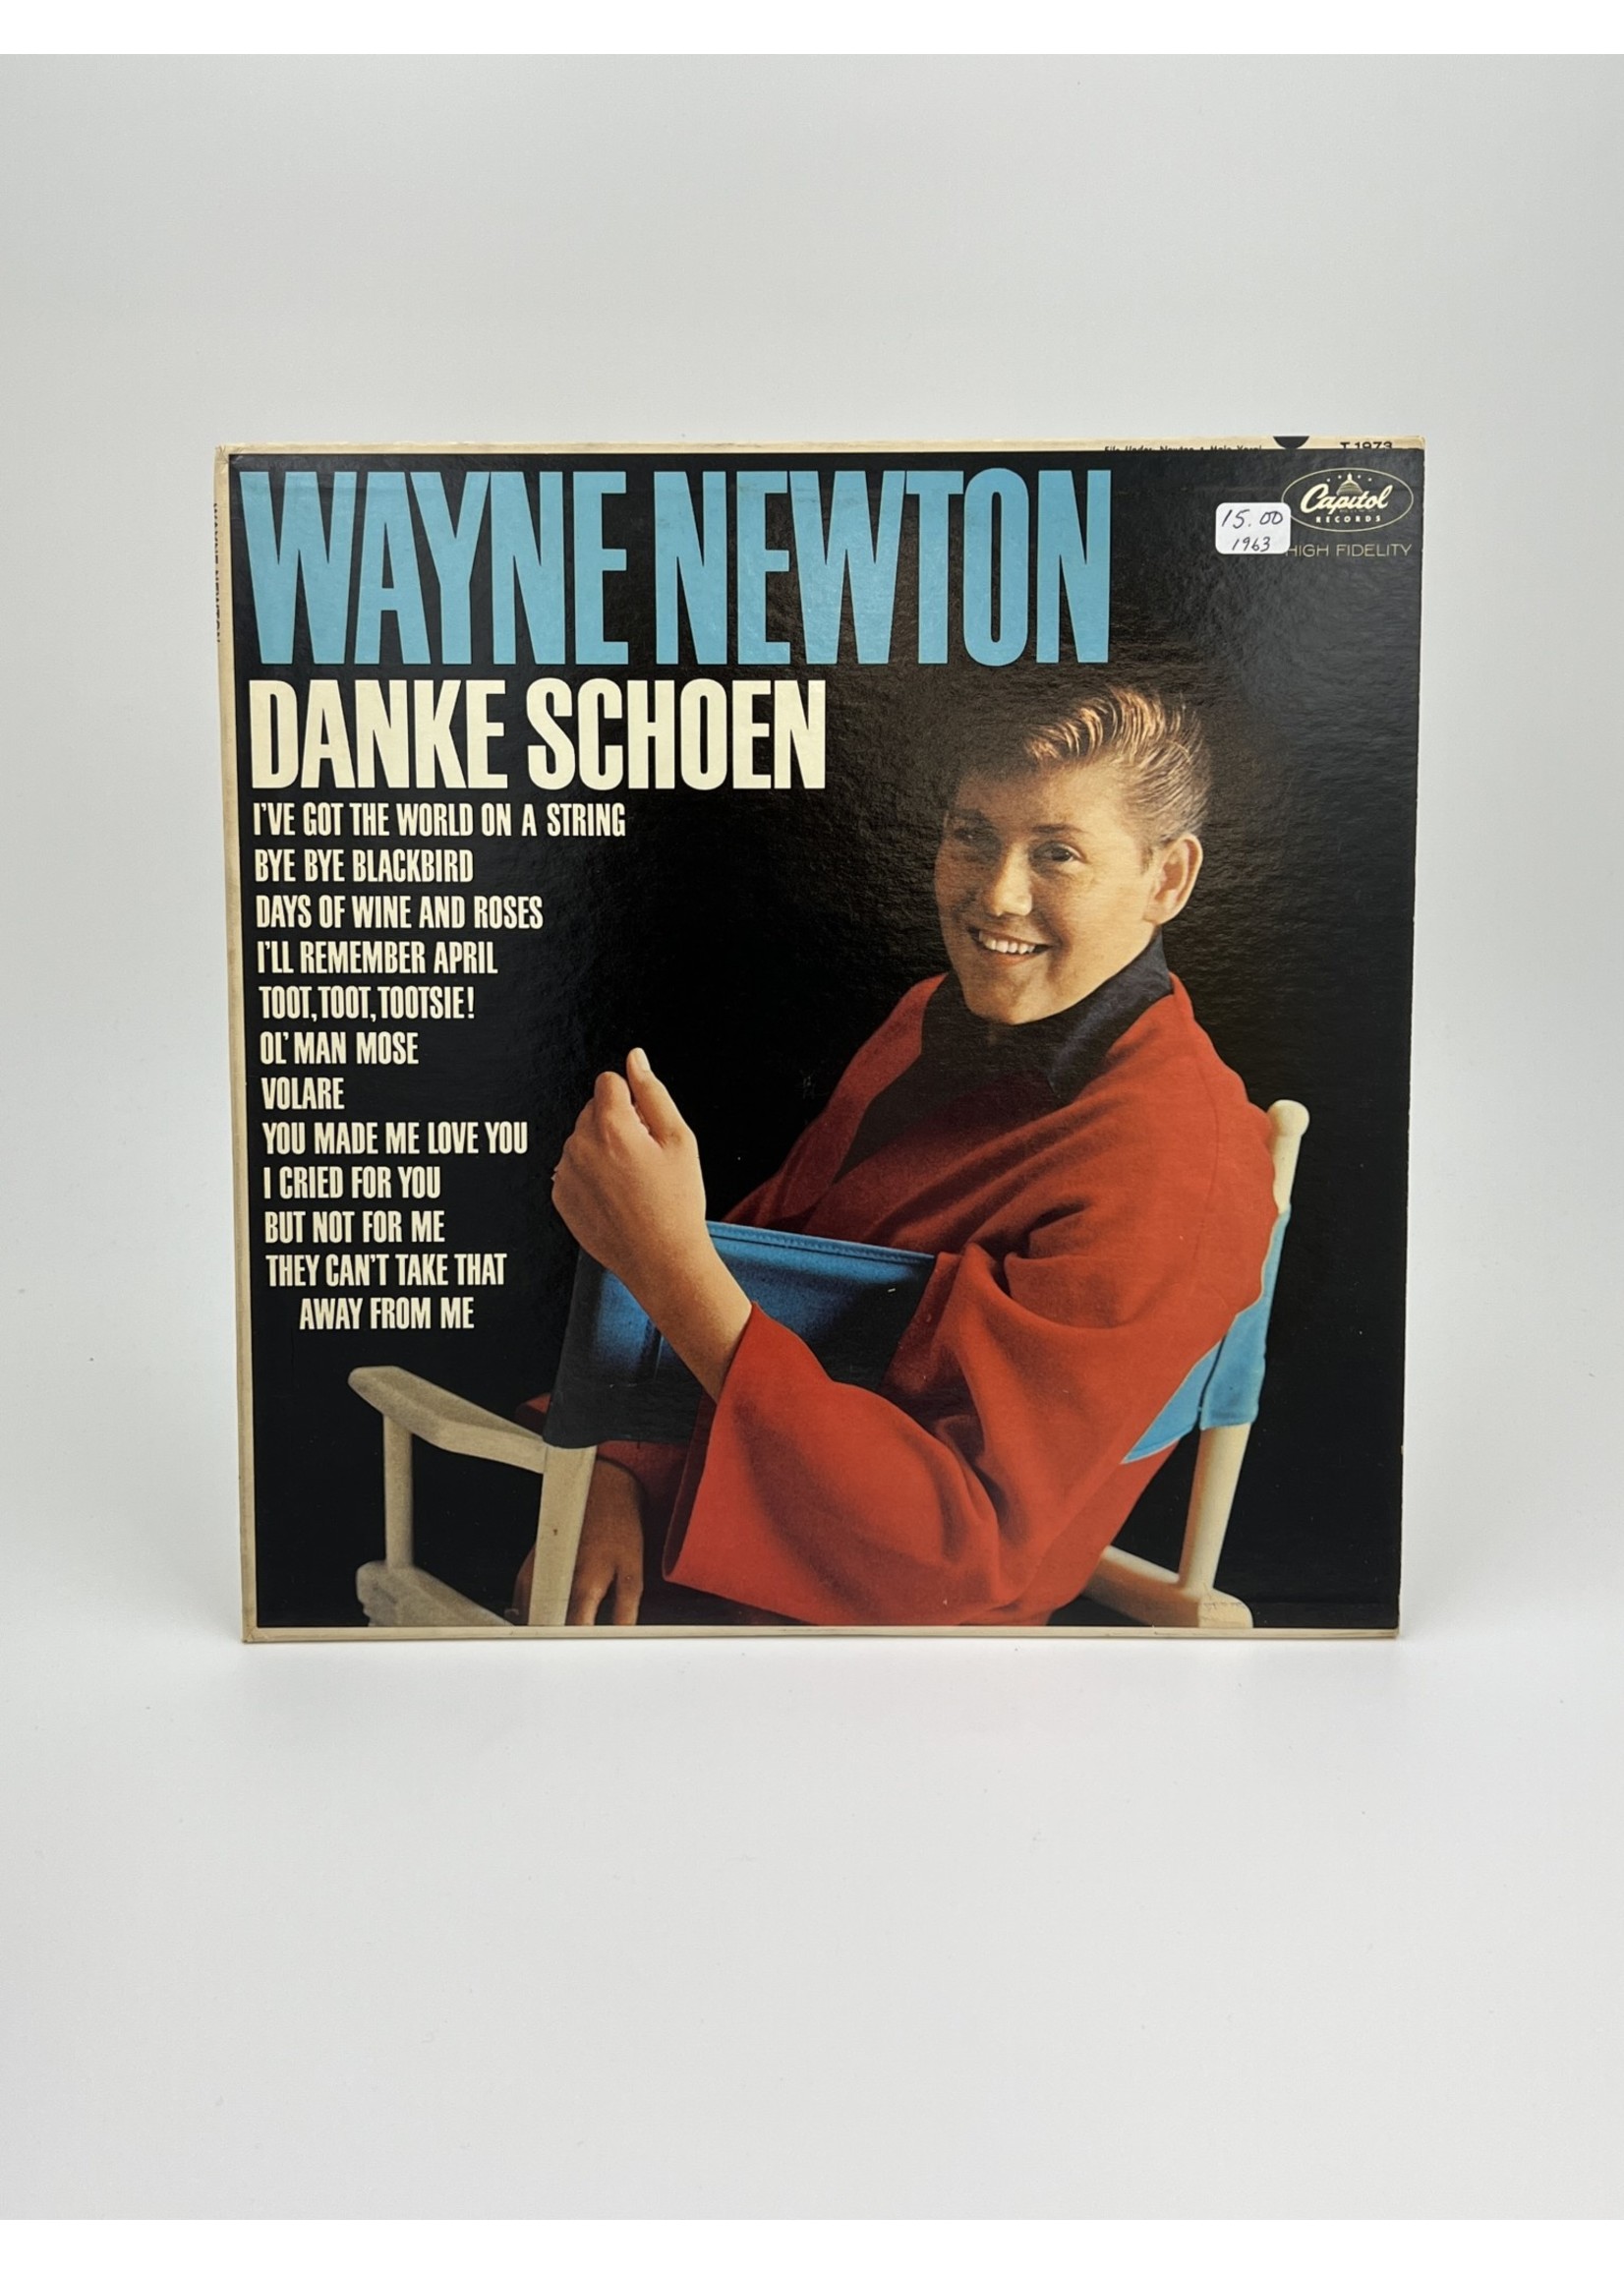 LP Wayne Newton Danke Schoen LP Record